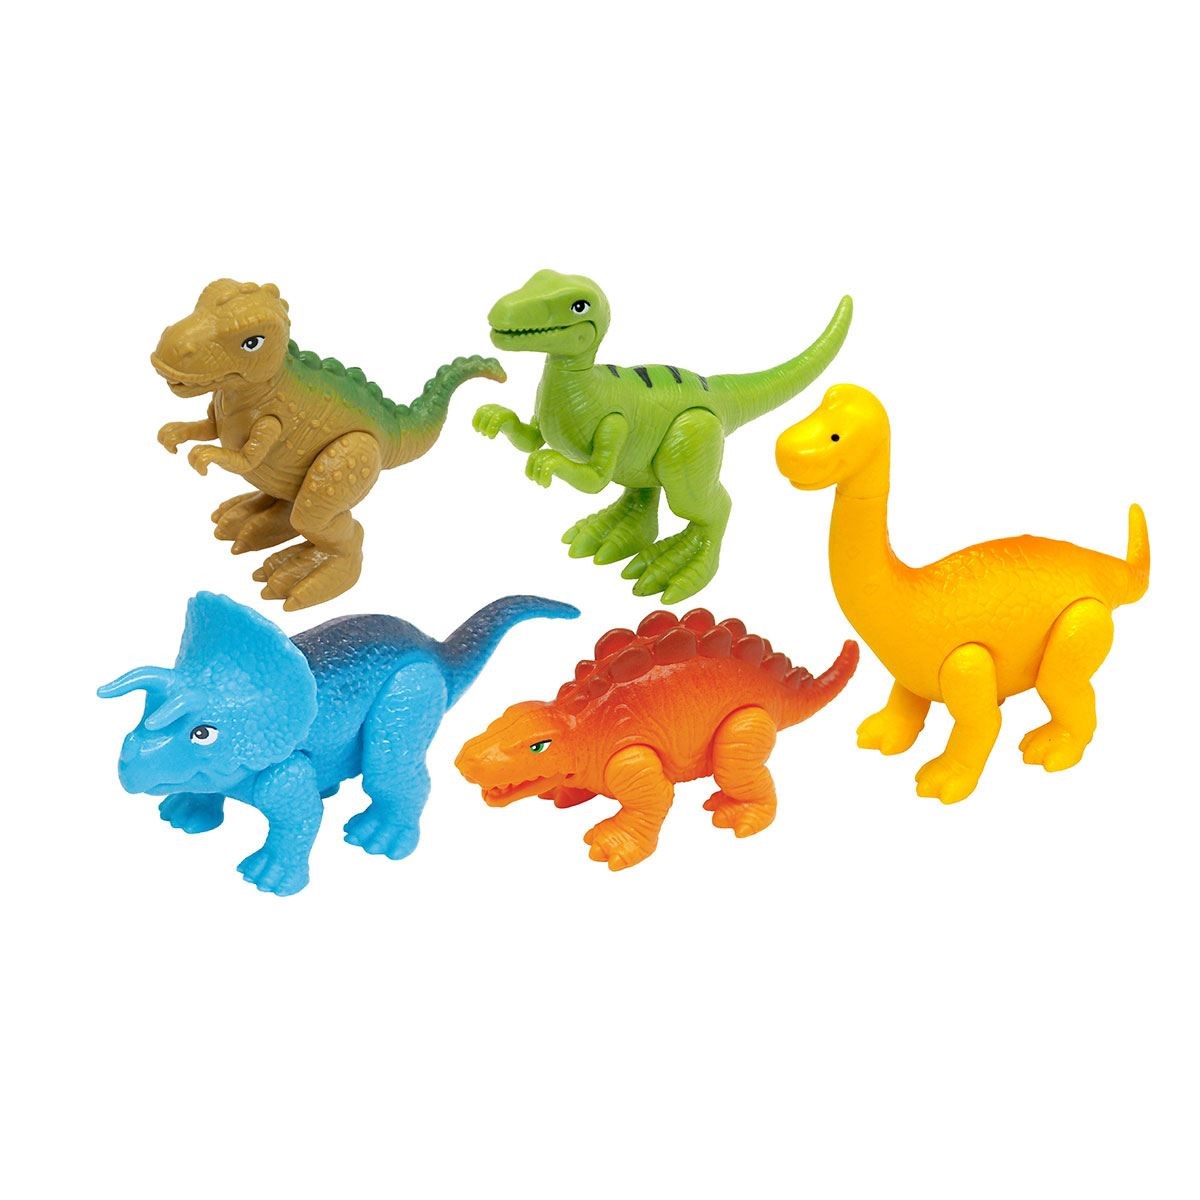 Набор игрушек Kiddieland Динозавры, 5 видов